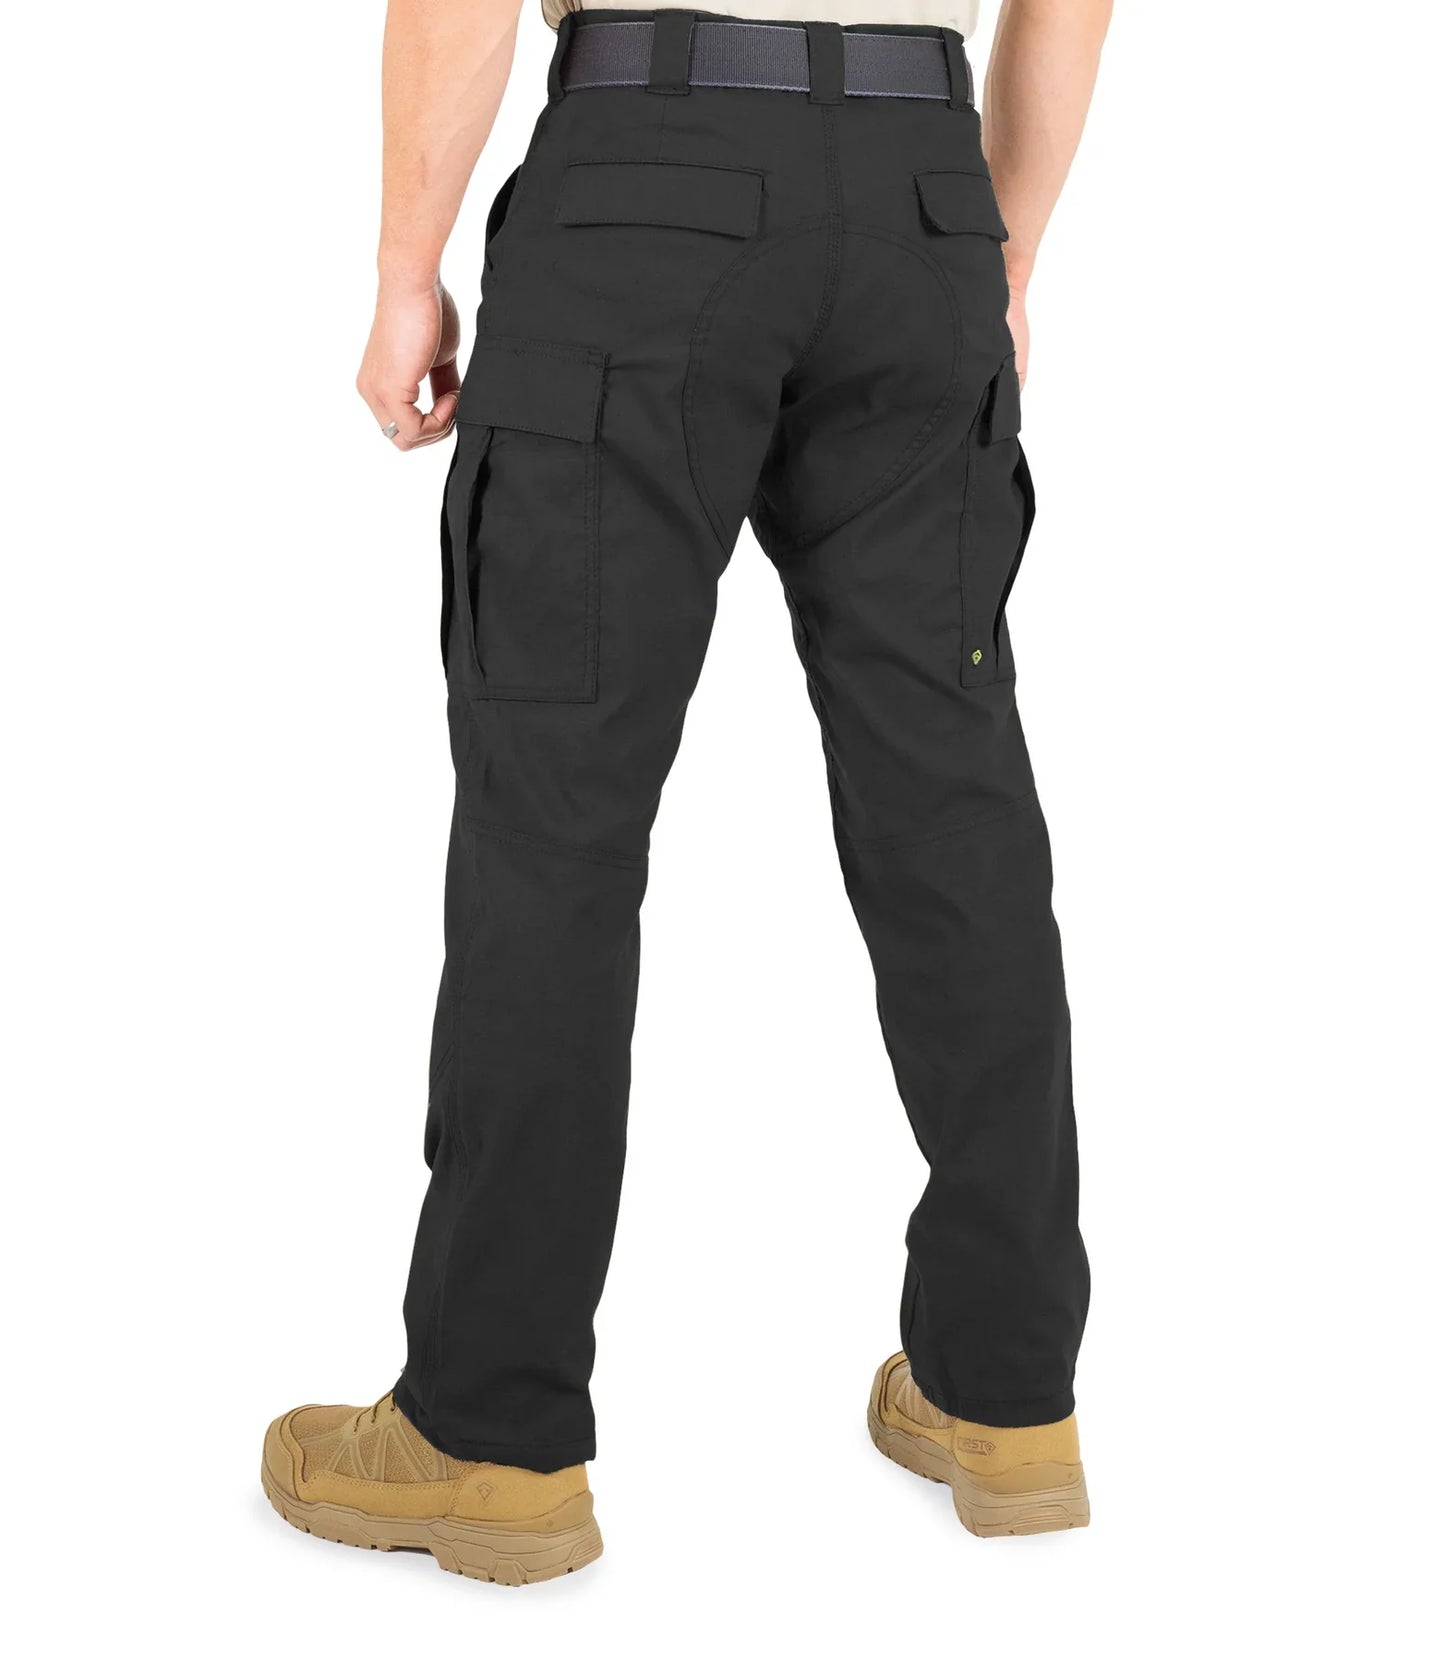 First Tactical Men's V2 BDU Pants